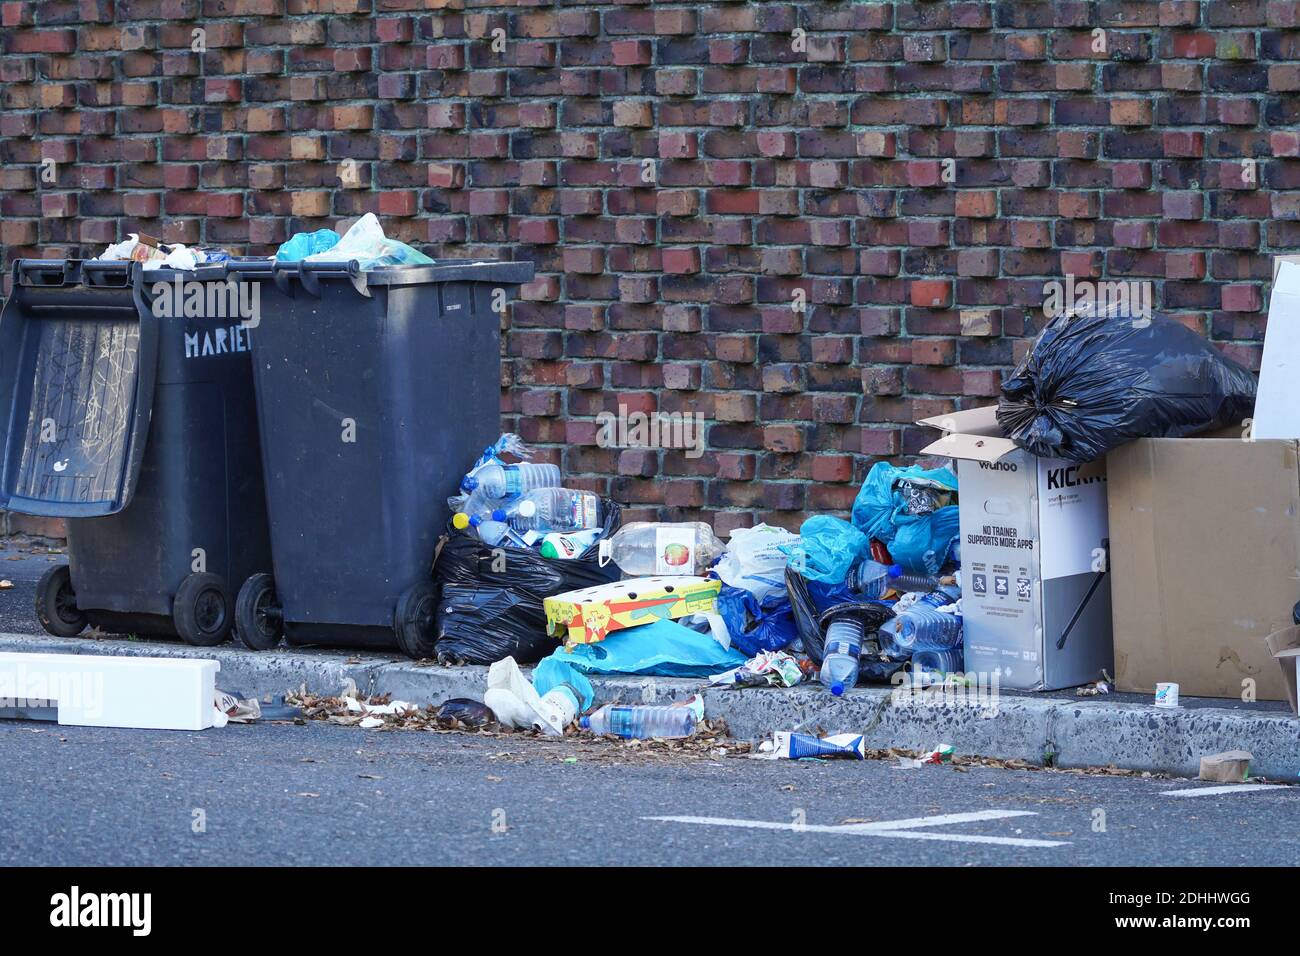 Litière à côté d'une poubelle, poubelles débordant sur le trottoir avec des ordures laissées dehors concept de pollution environnementale au Cap, Afrique du Sud Banque D'Images